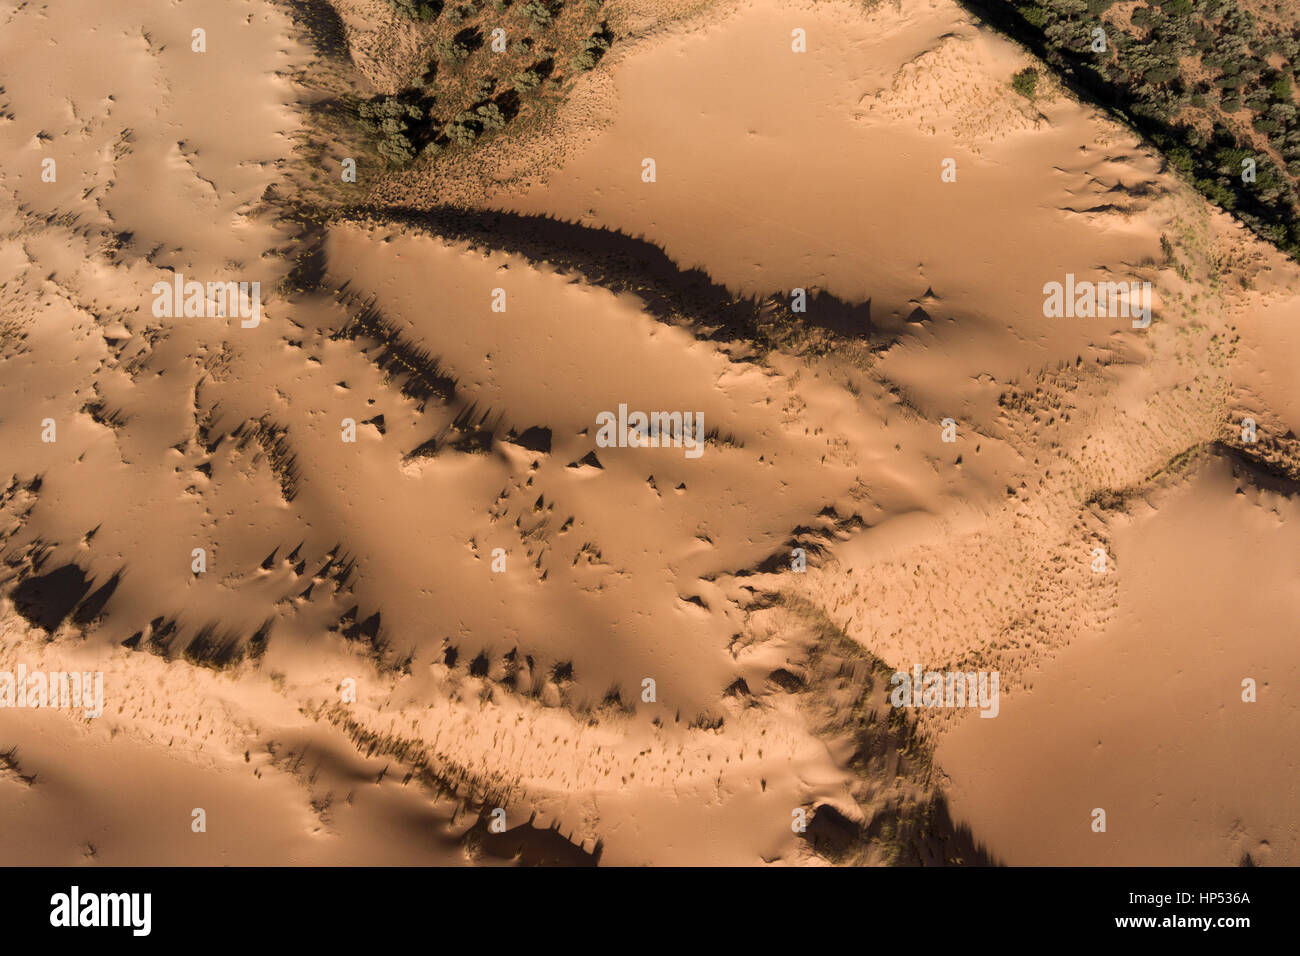 Vue aérienne du massif de dunes de sable dans la région aride du nord du Cap, Afrique du Sud Banque D'Images